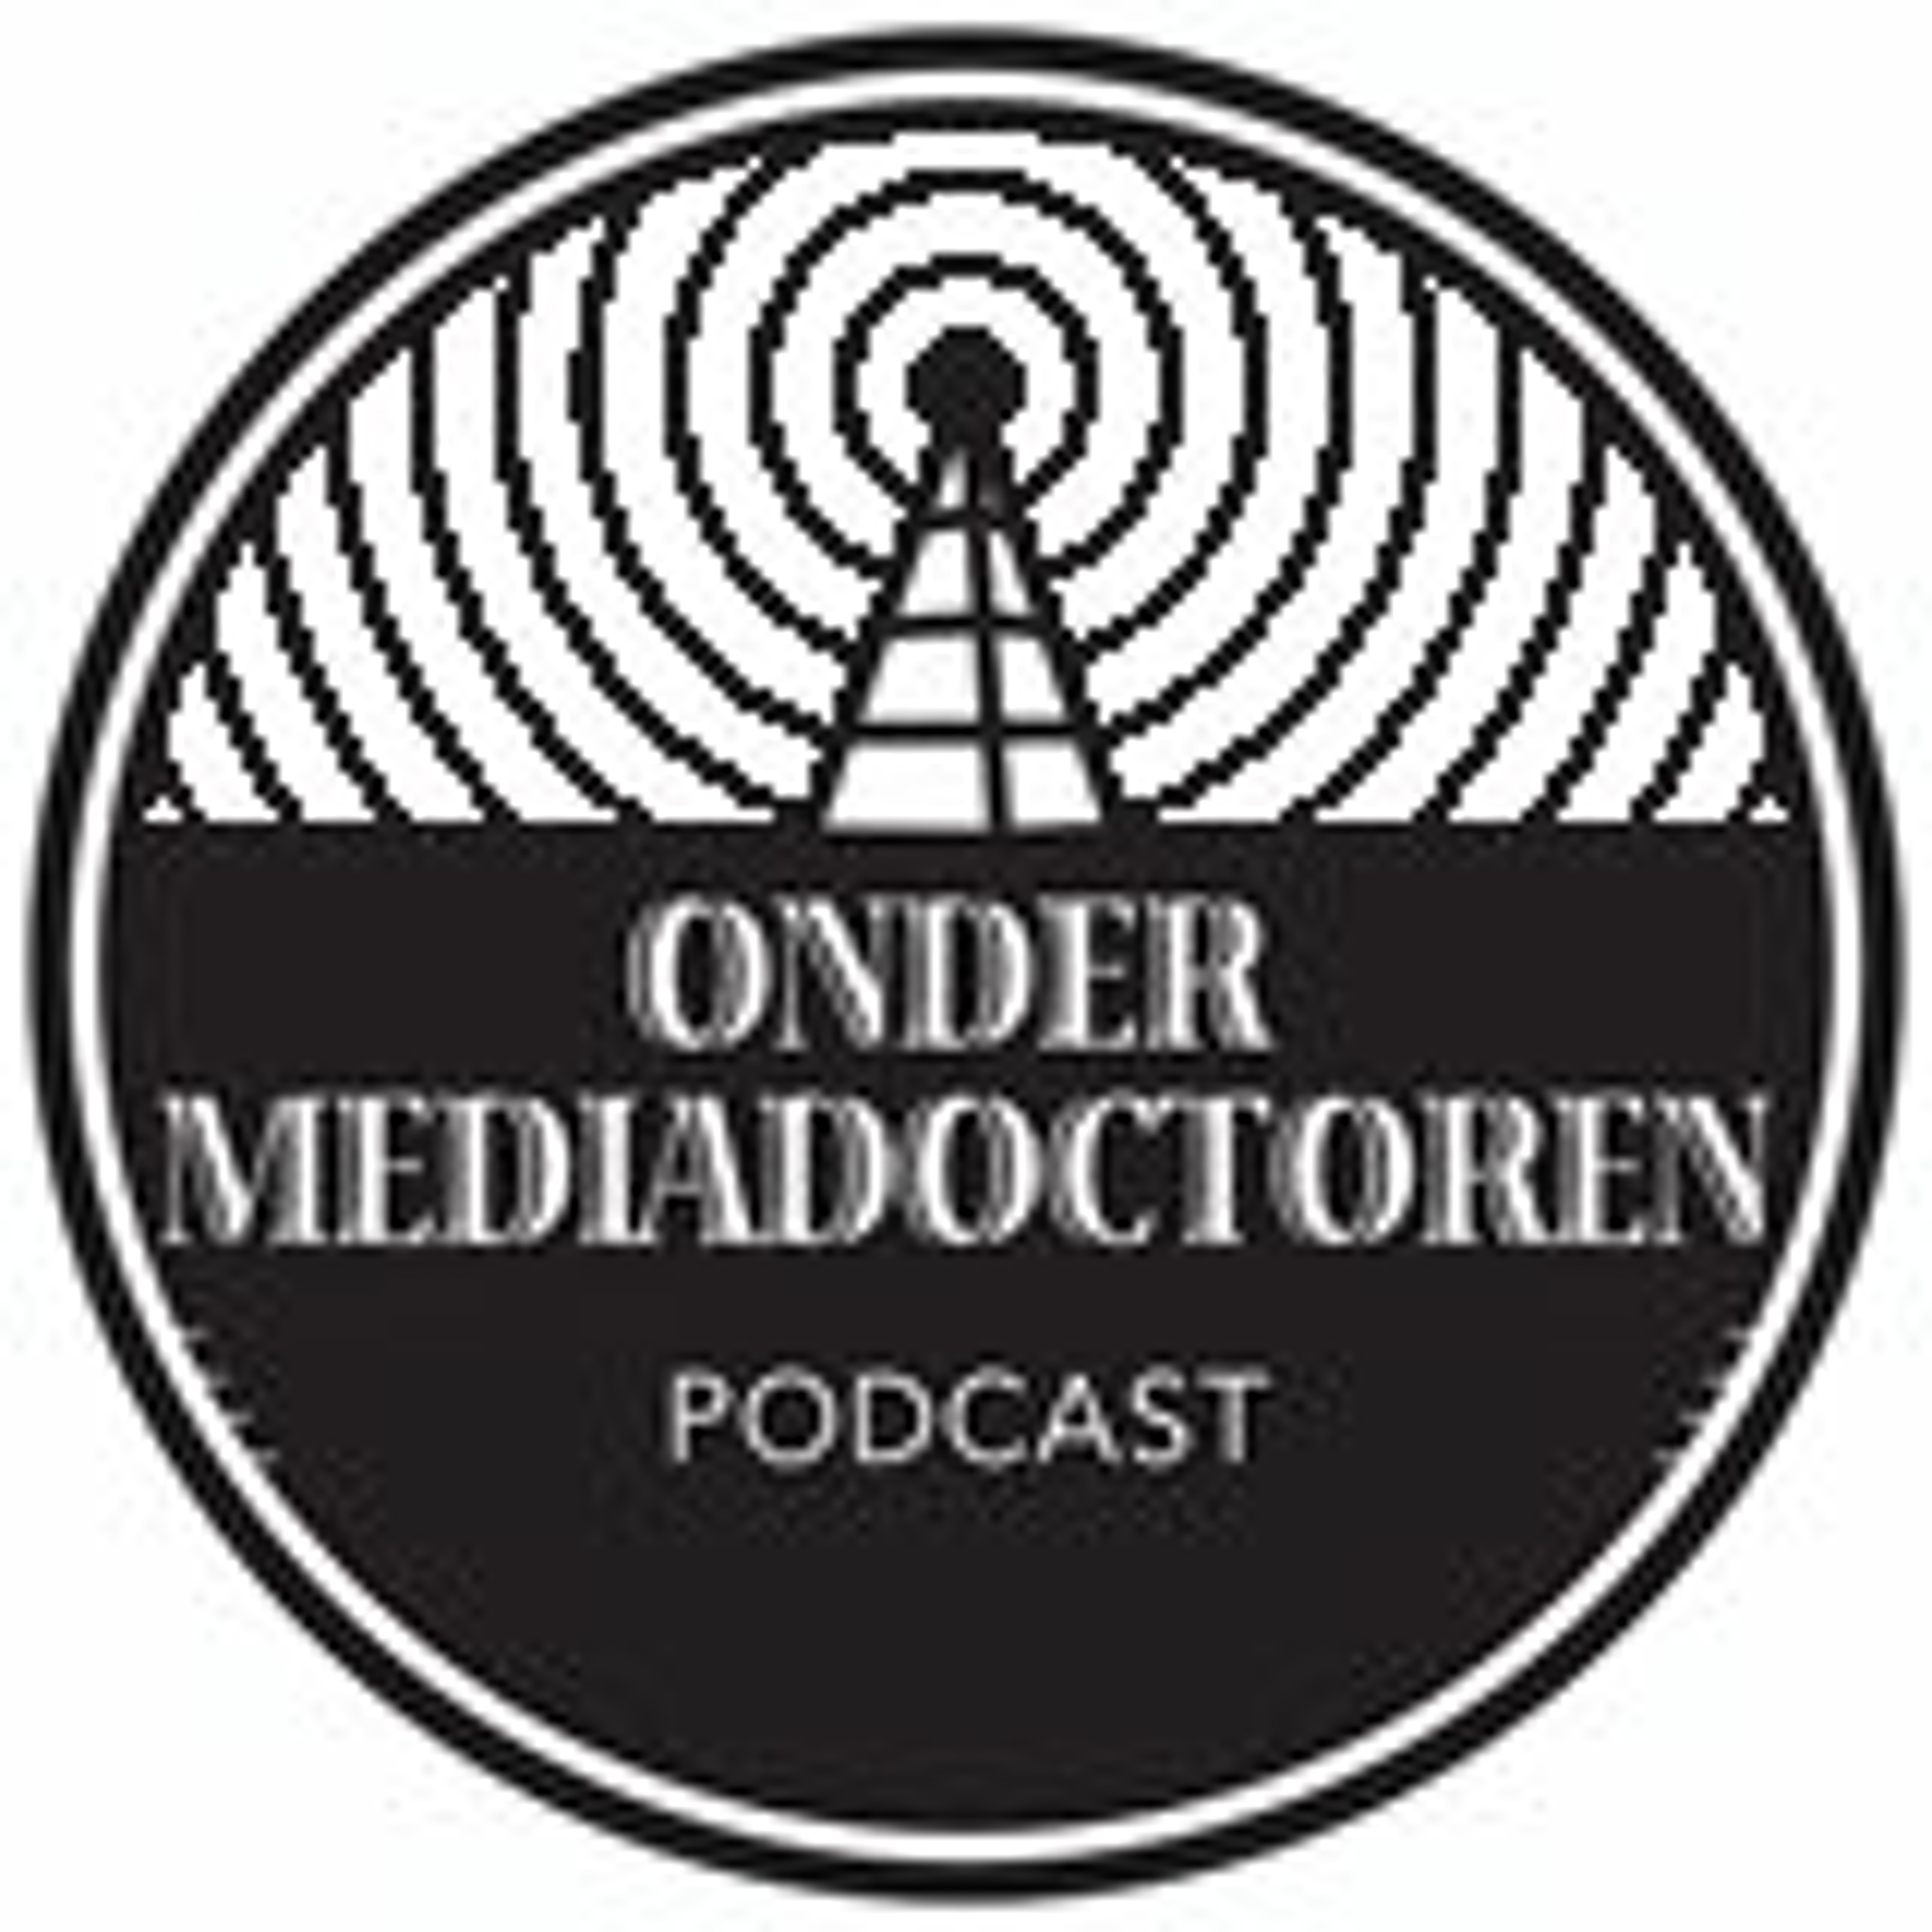 Afl 164: Hoe Nederland al 100 jaar radio inzet voor oorlogspropaganda